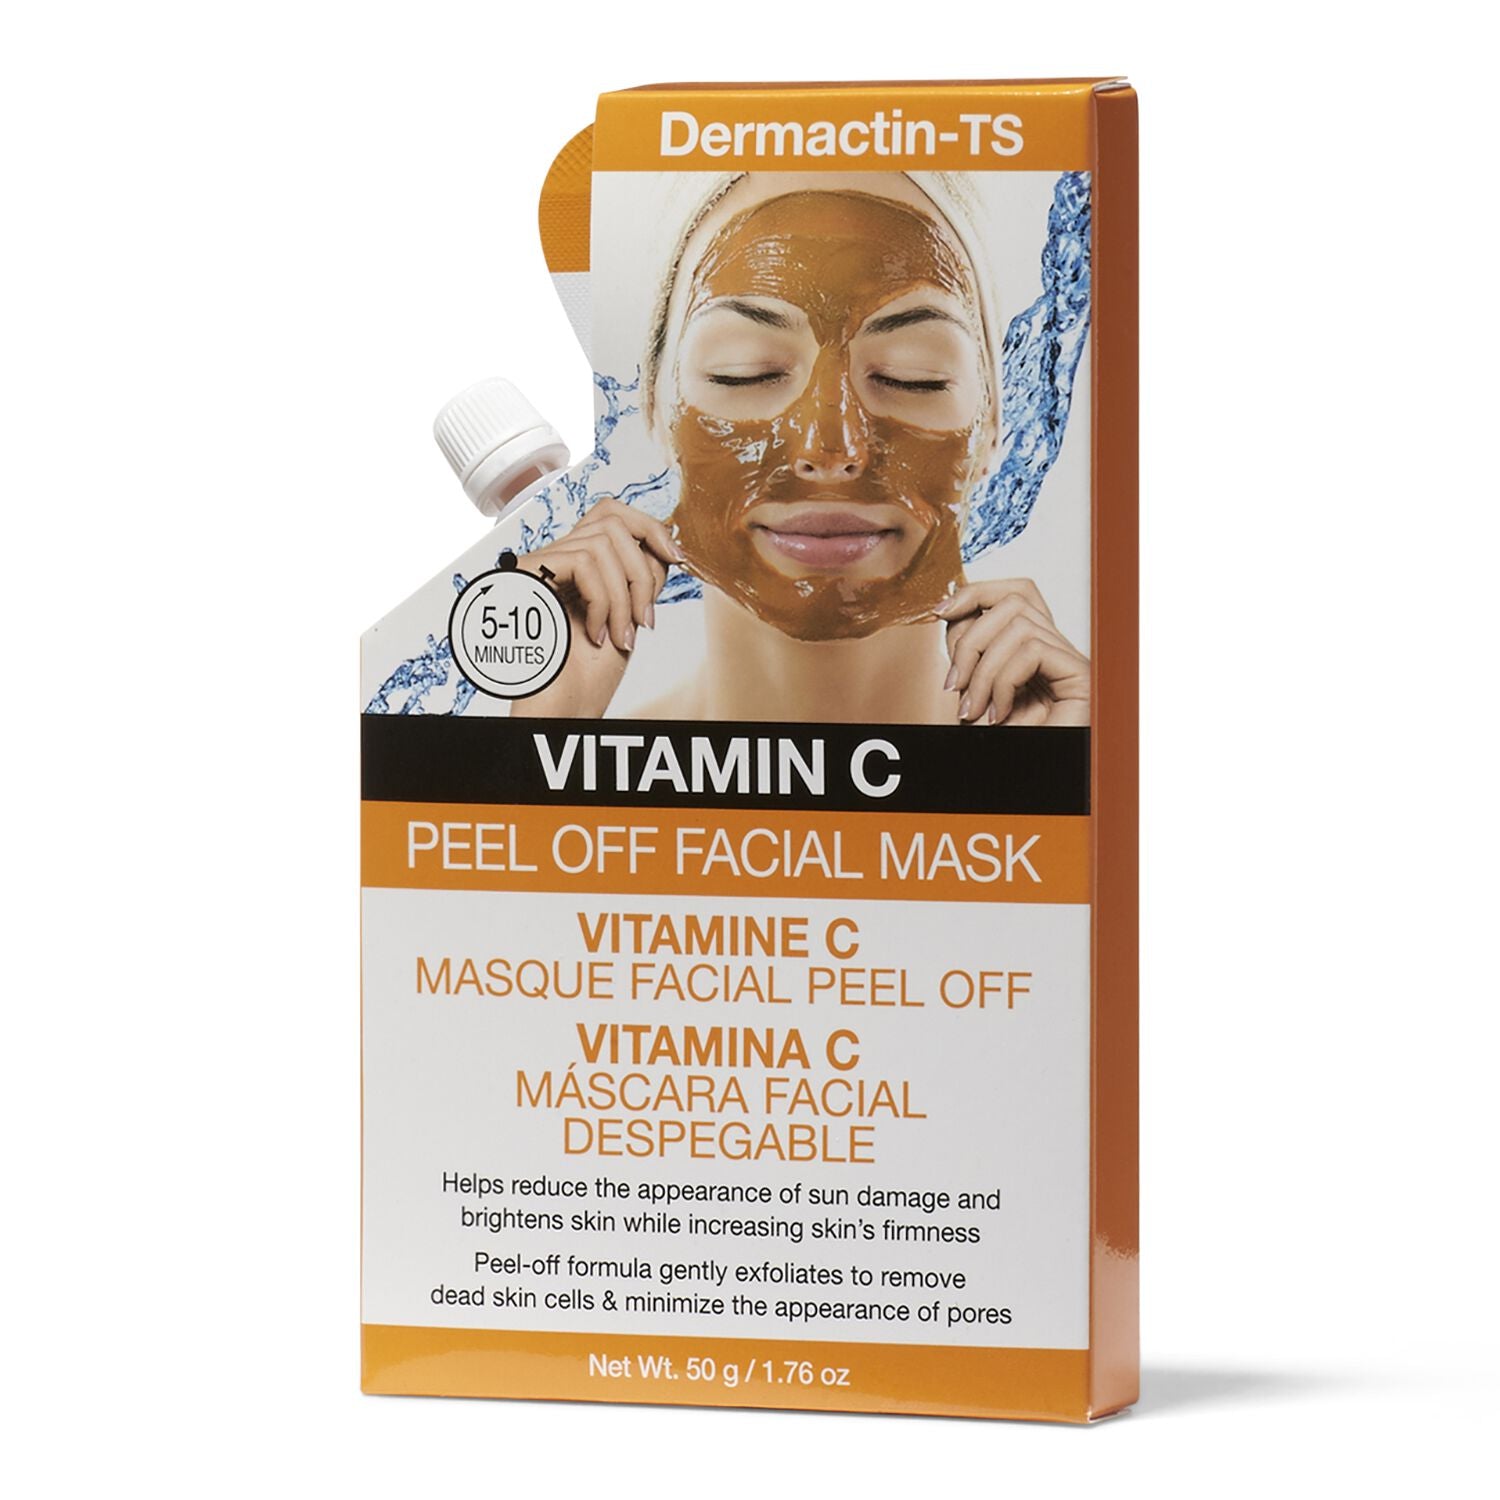 Dermactin-TS Peel Off Facial Mask Vitamin C